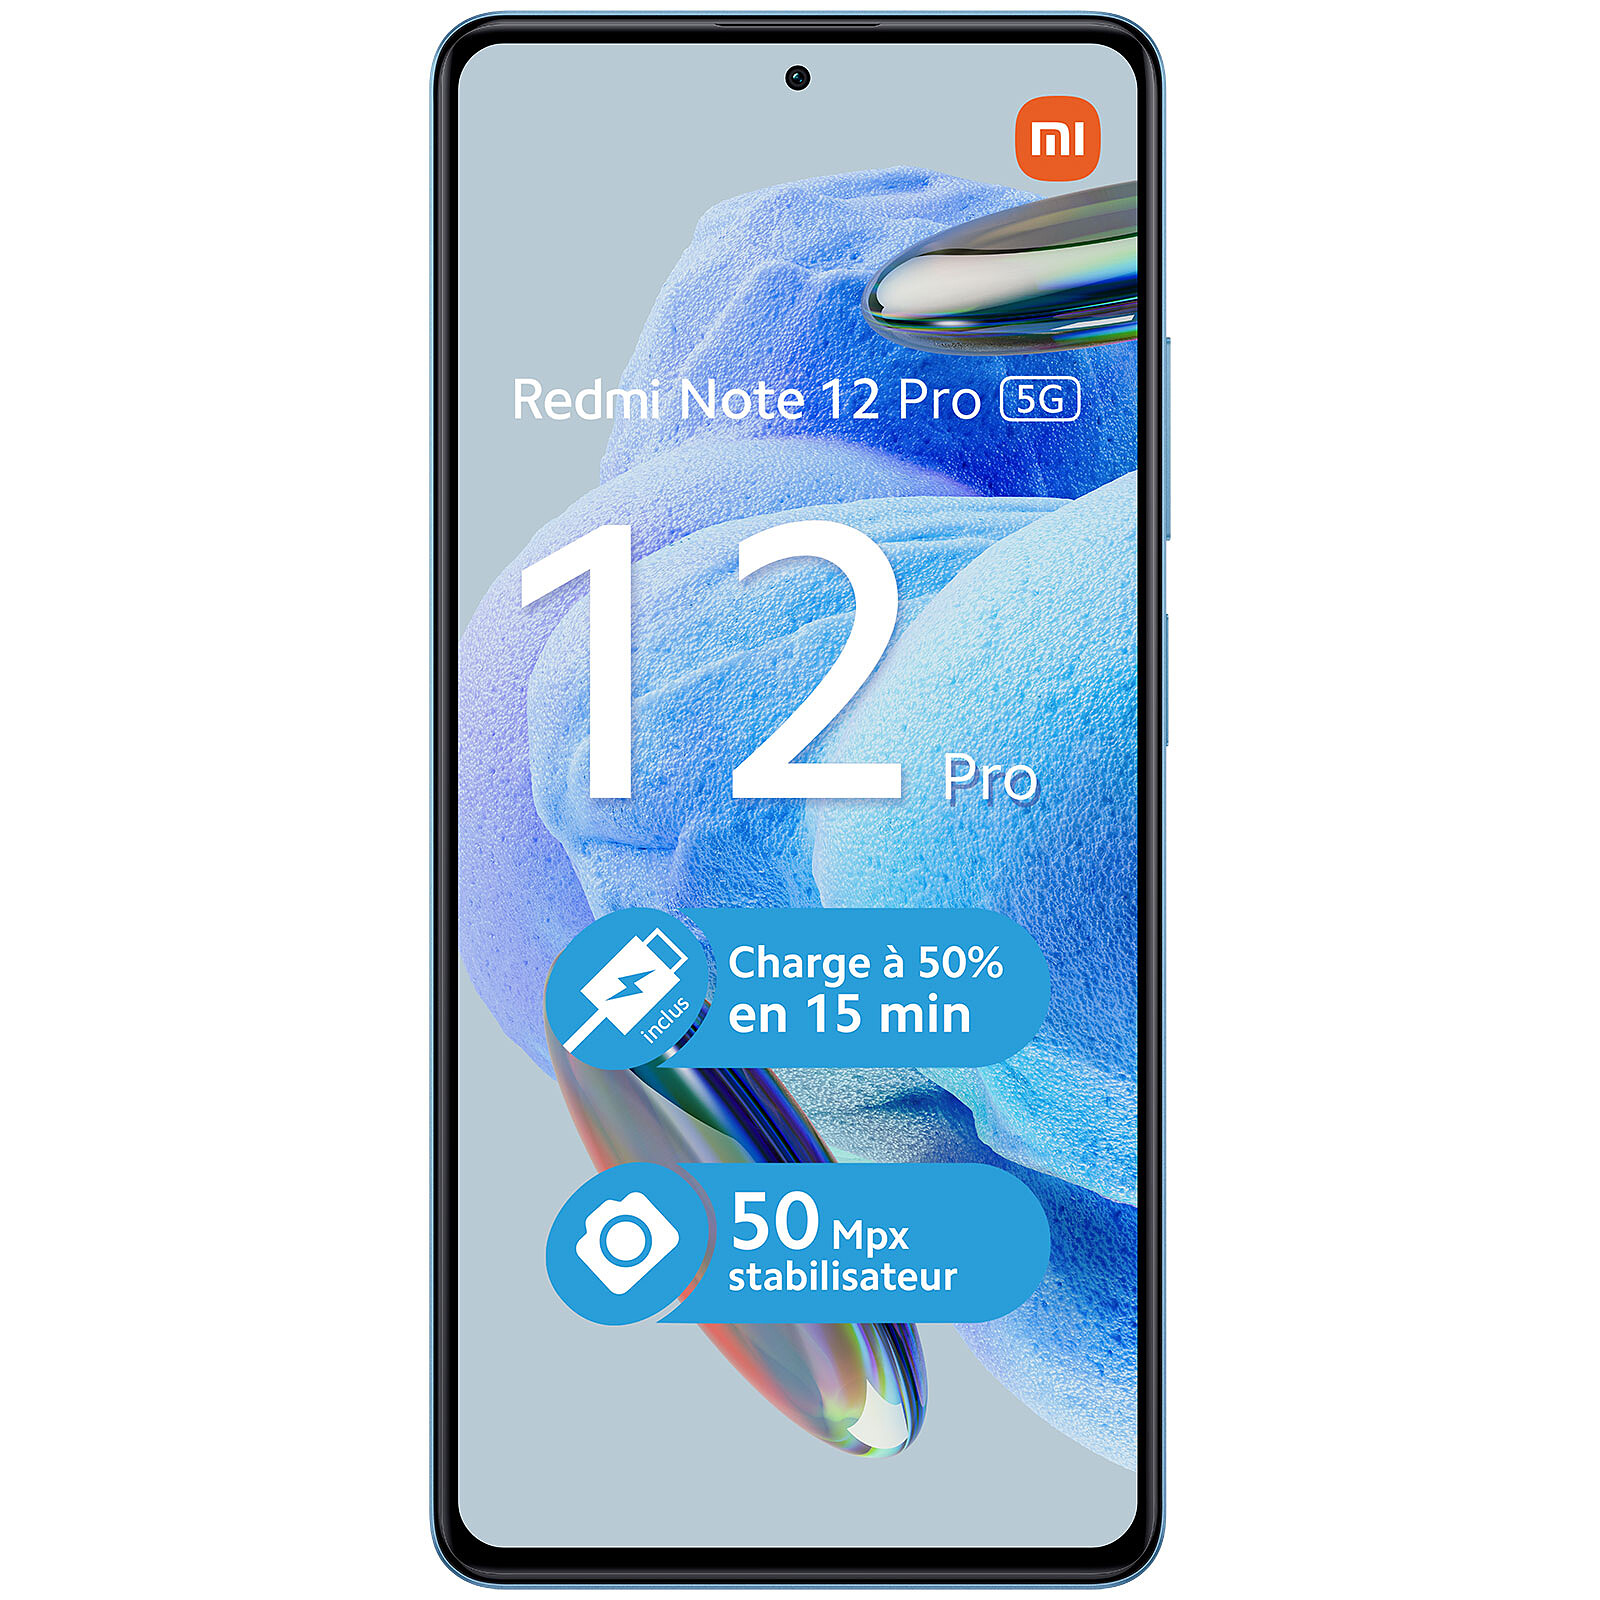 Xiaomi Redmi Note 13 Pro 5G Morado (8GB / 256GB) - Móvil y smartphone - LDLC